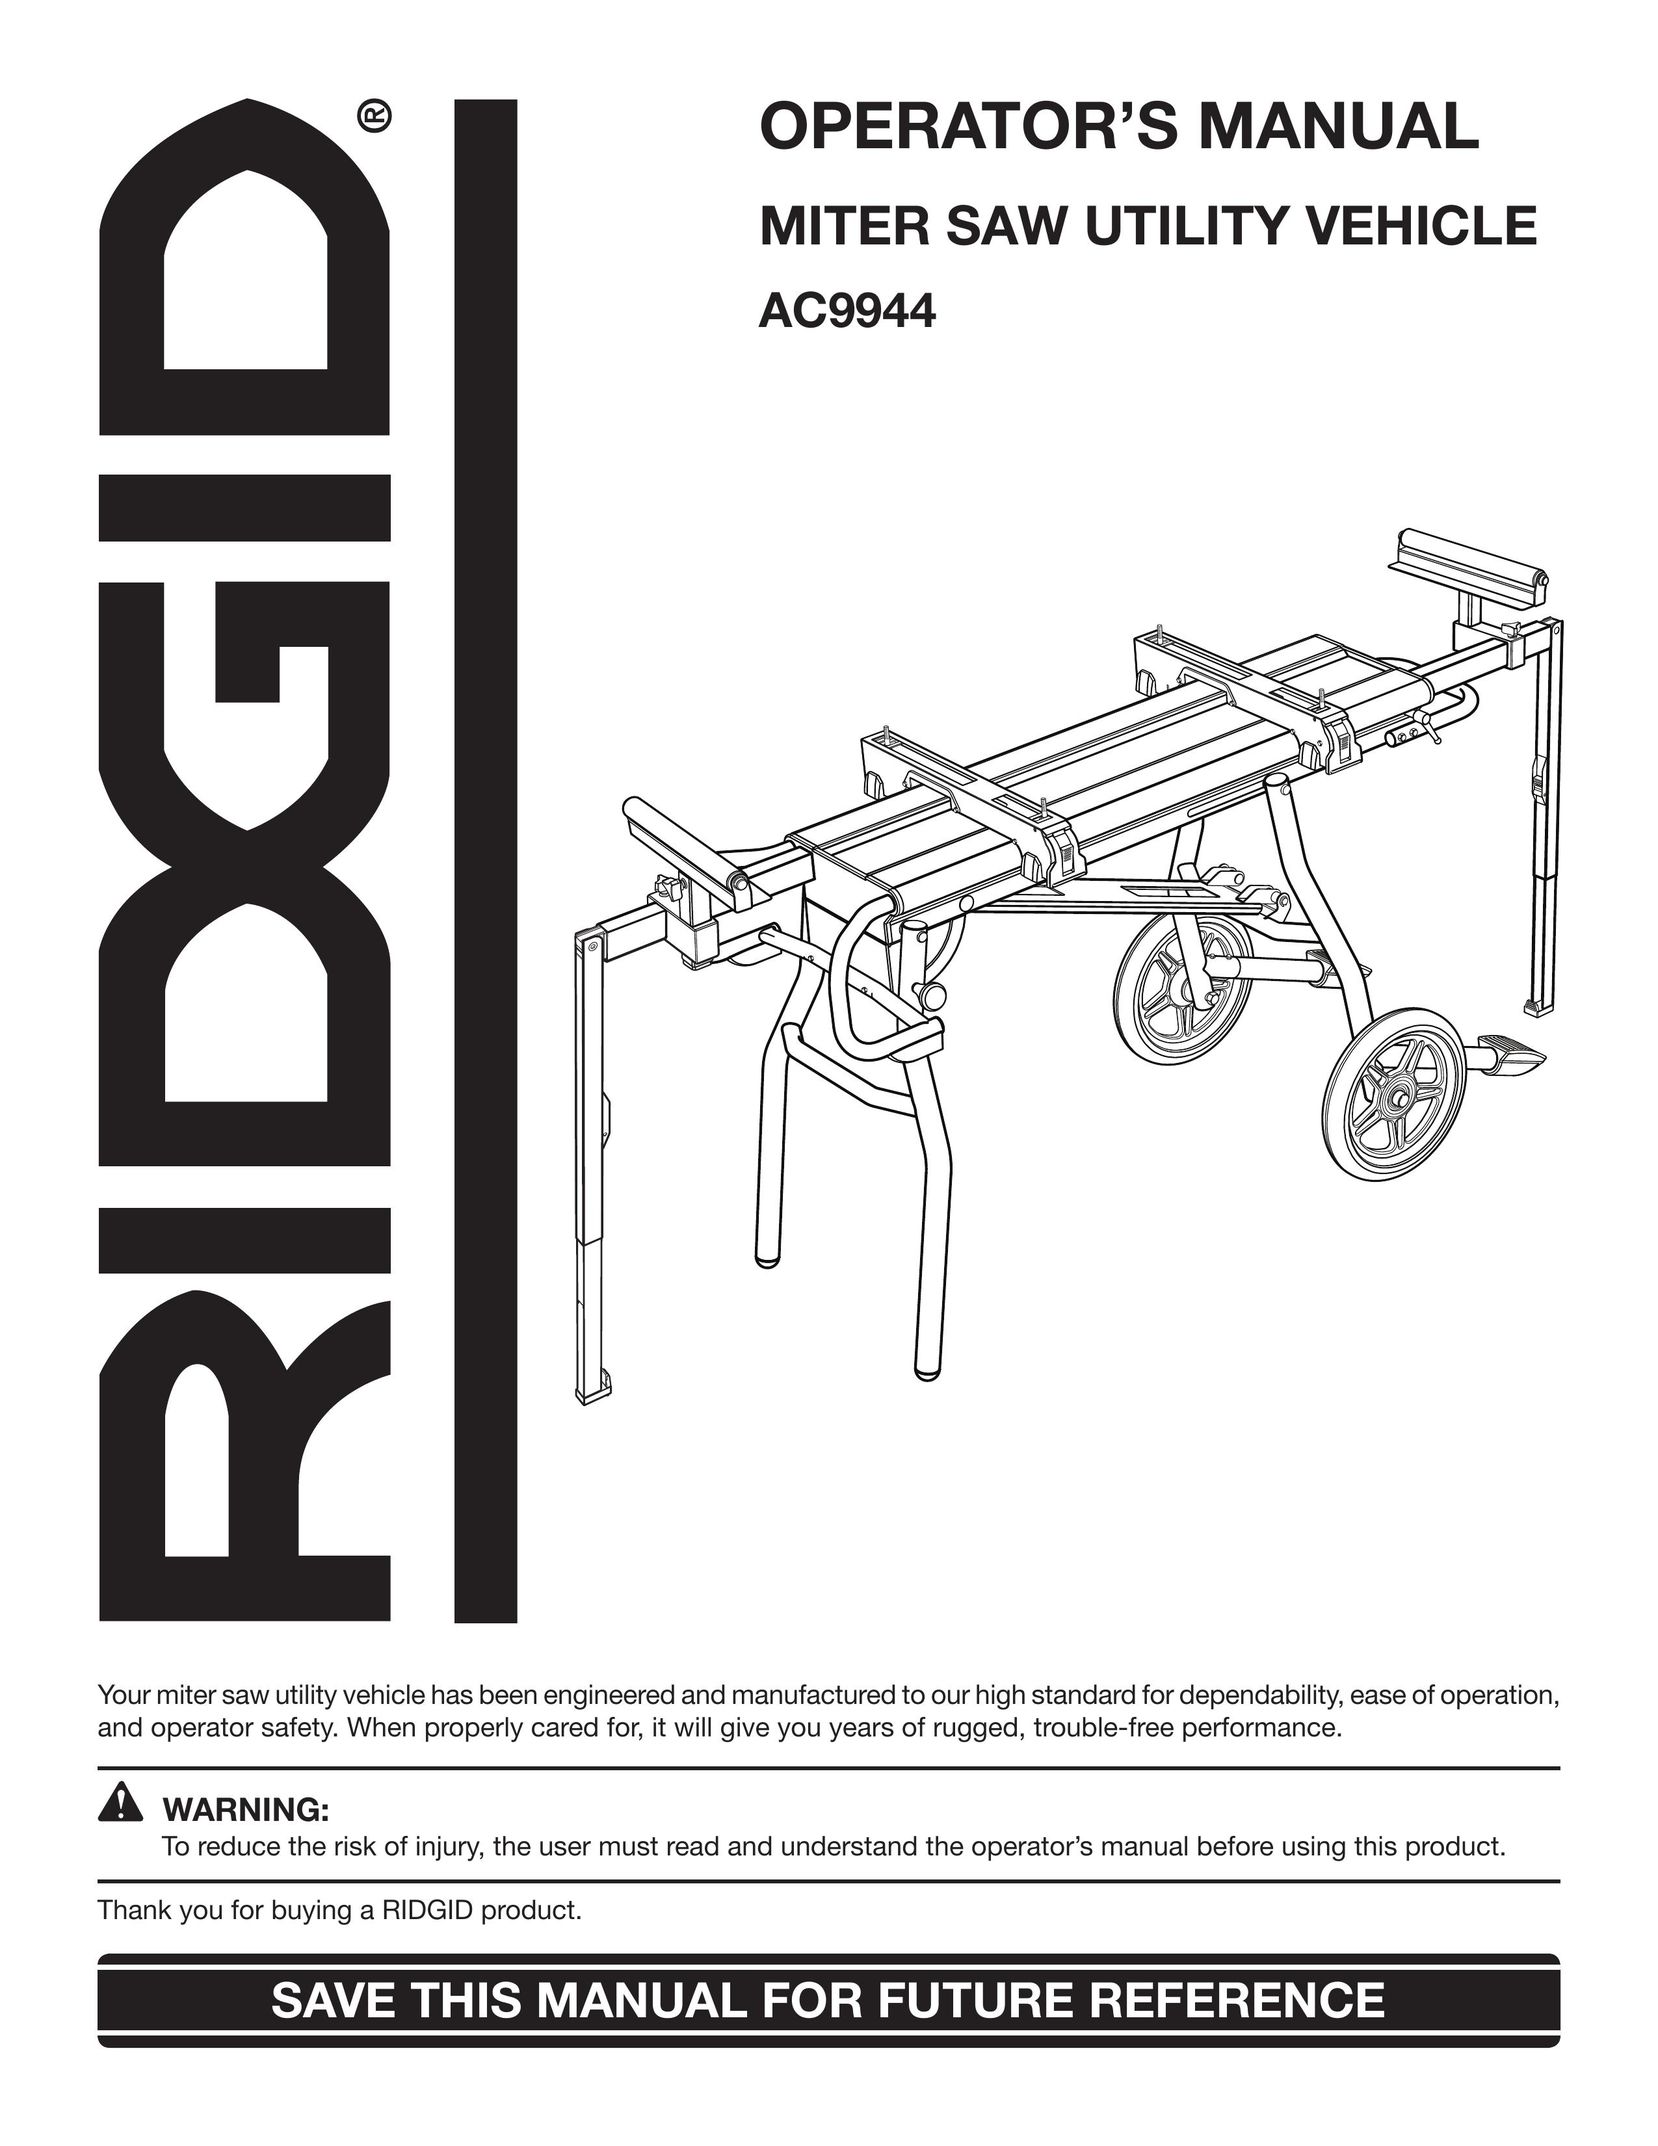 RIDGID AC9944 Saw User Manual